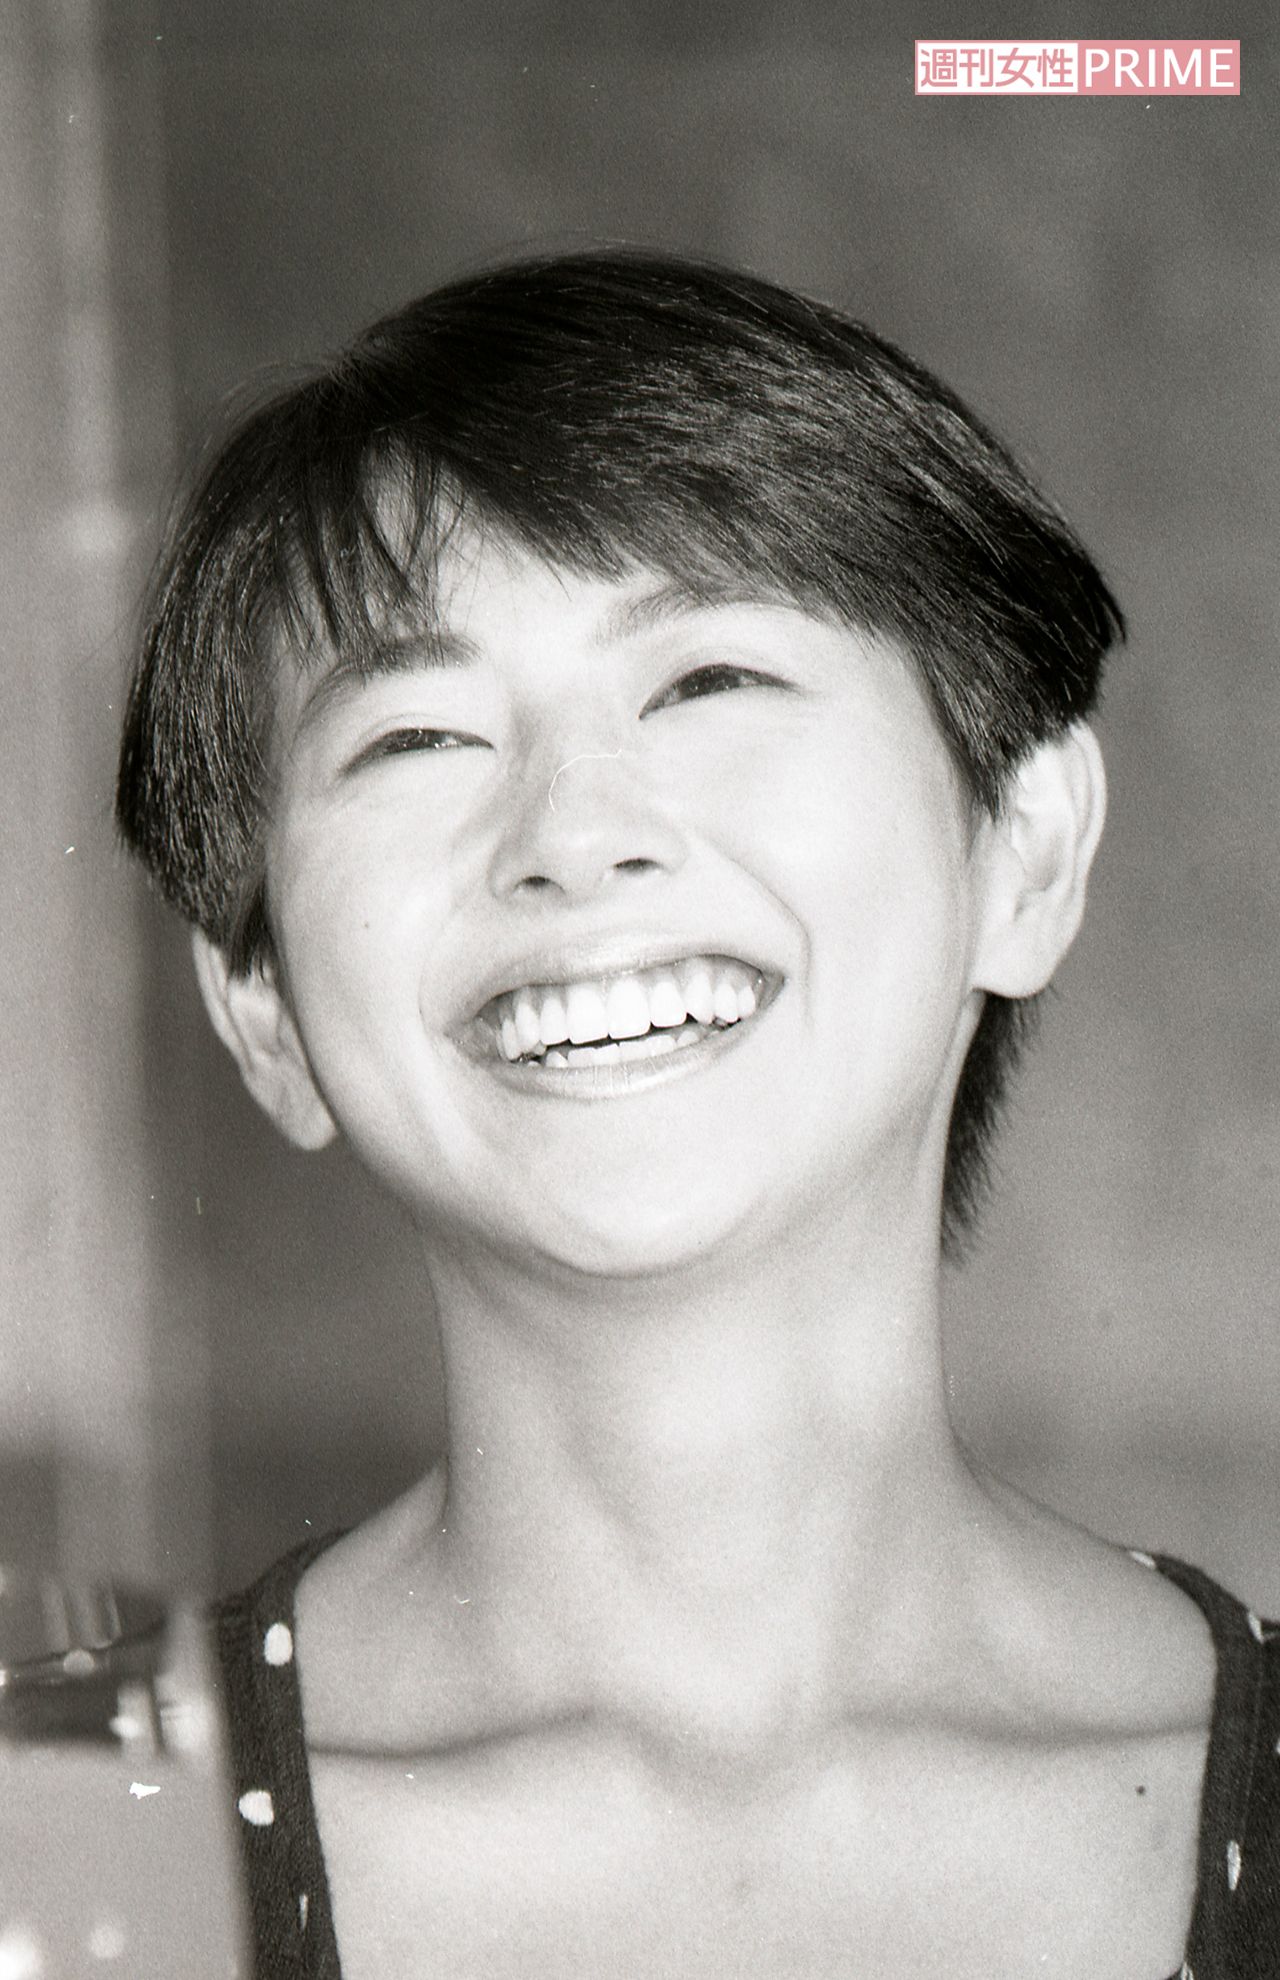 小泉今日子の画像 写真 小泉今日子 1985年 11枚目 週刊女性prime